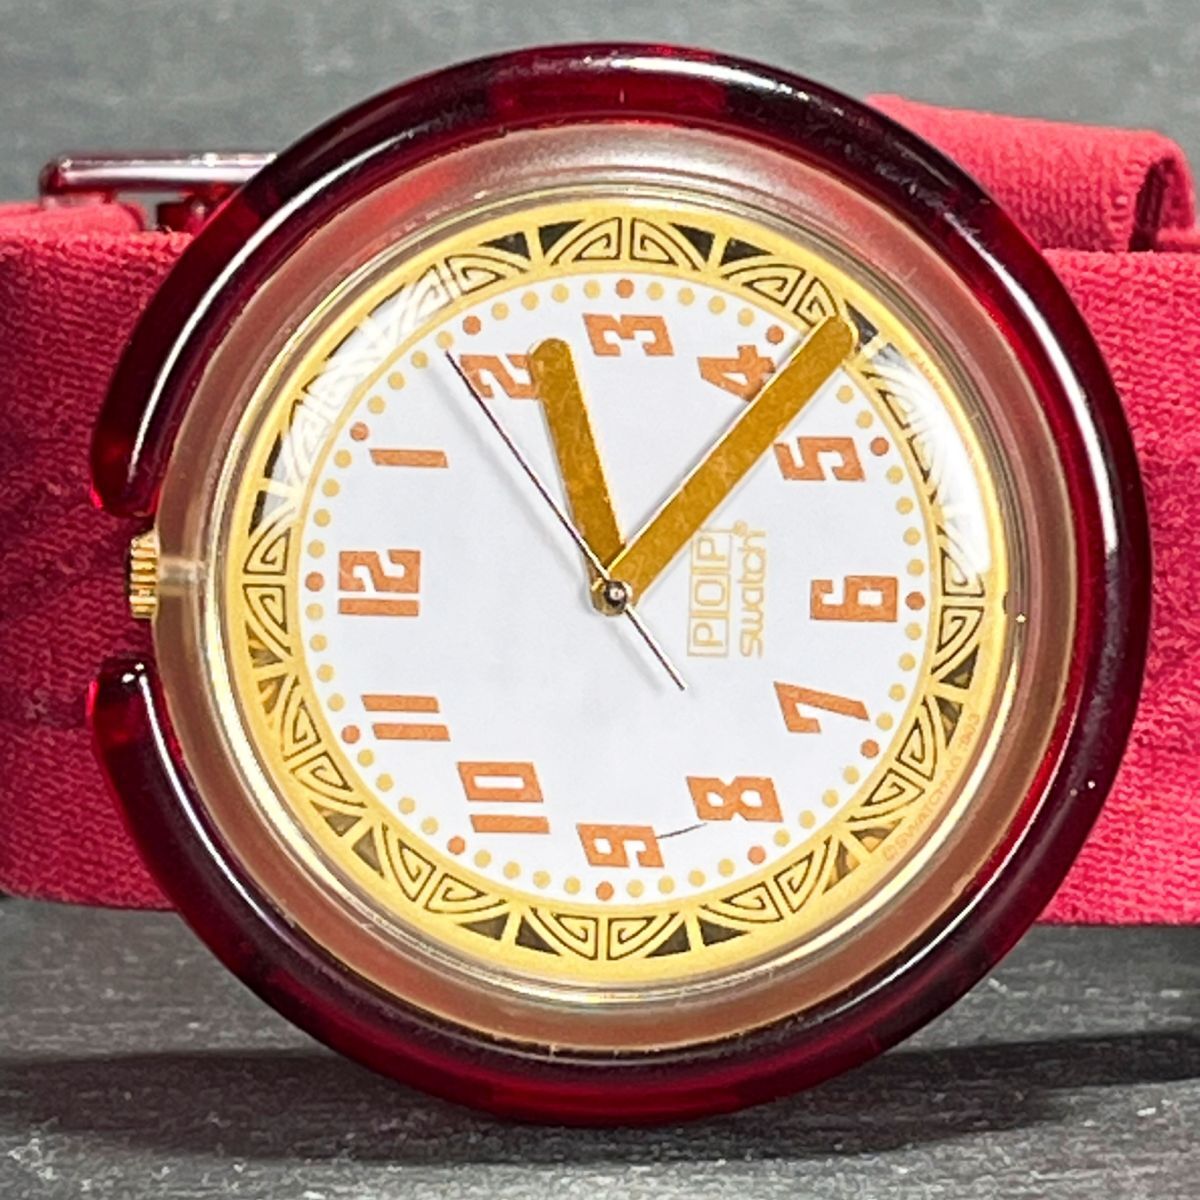 POP SWATCH pop Swatch MELANGEmi Lingerie AG1993 PWK197 наручные часы аналог кварц белый циферблат красный новый товар батарейка заменена 